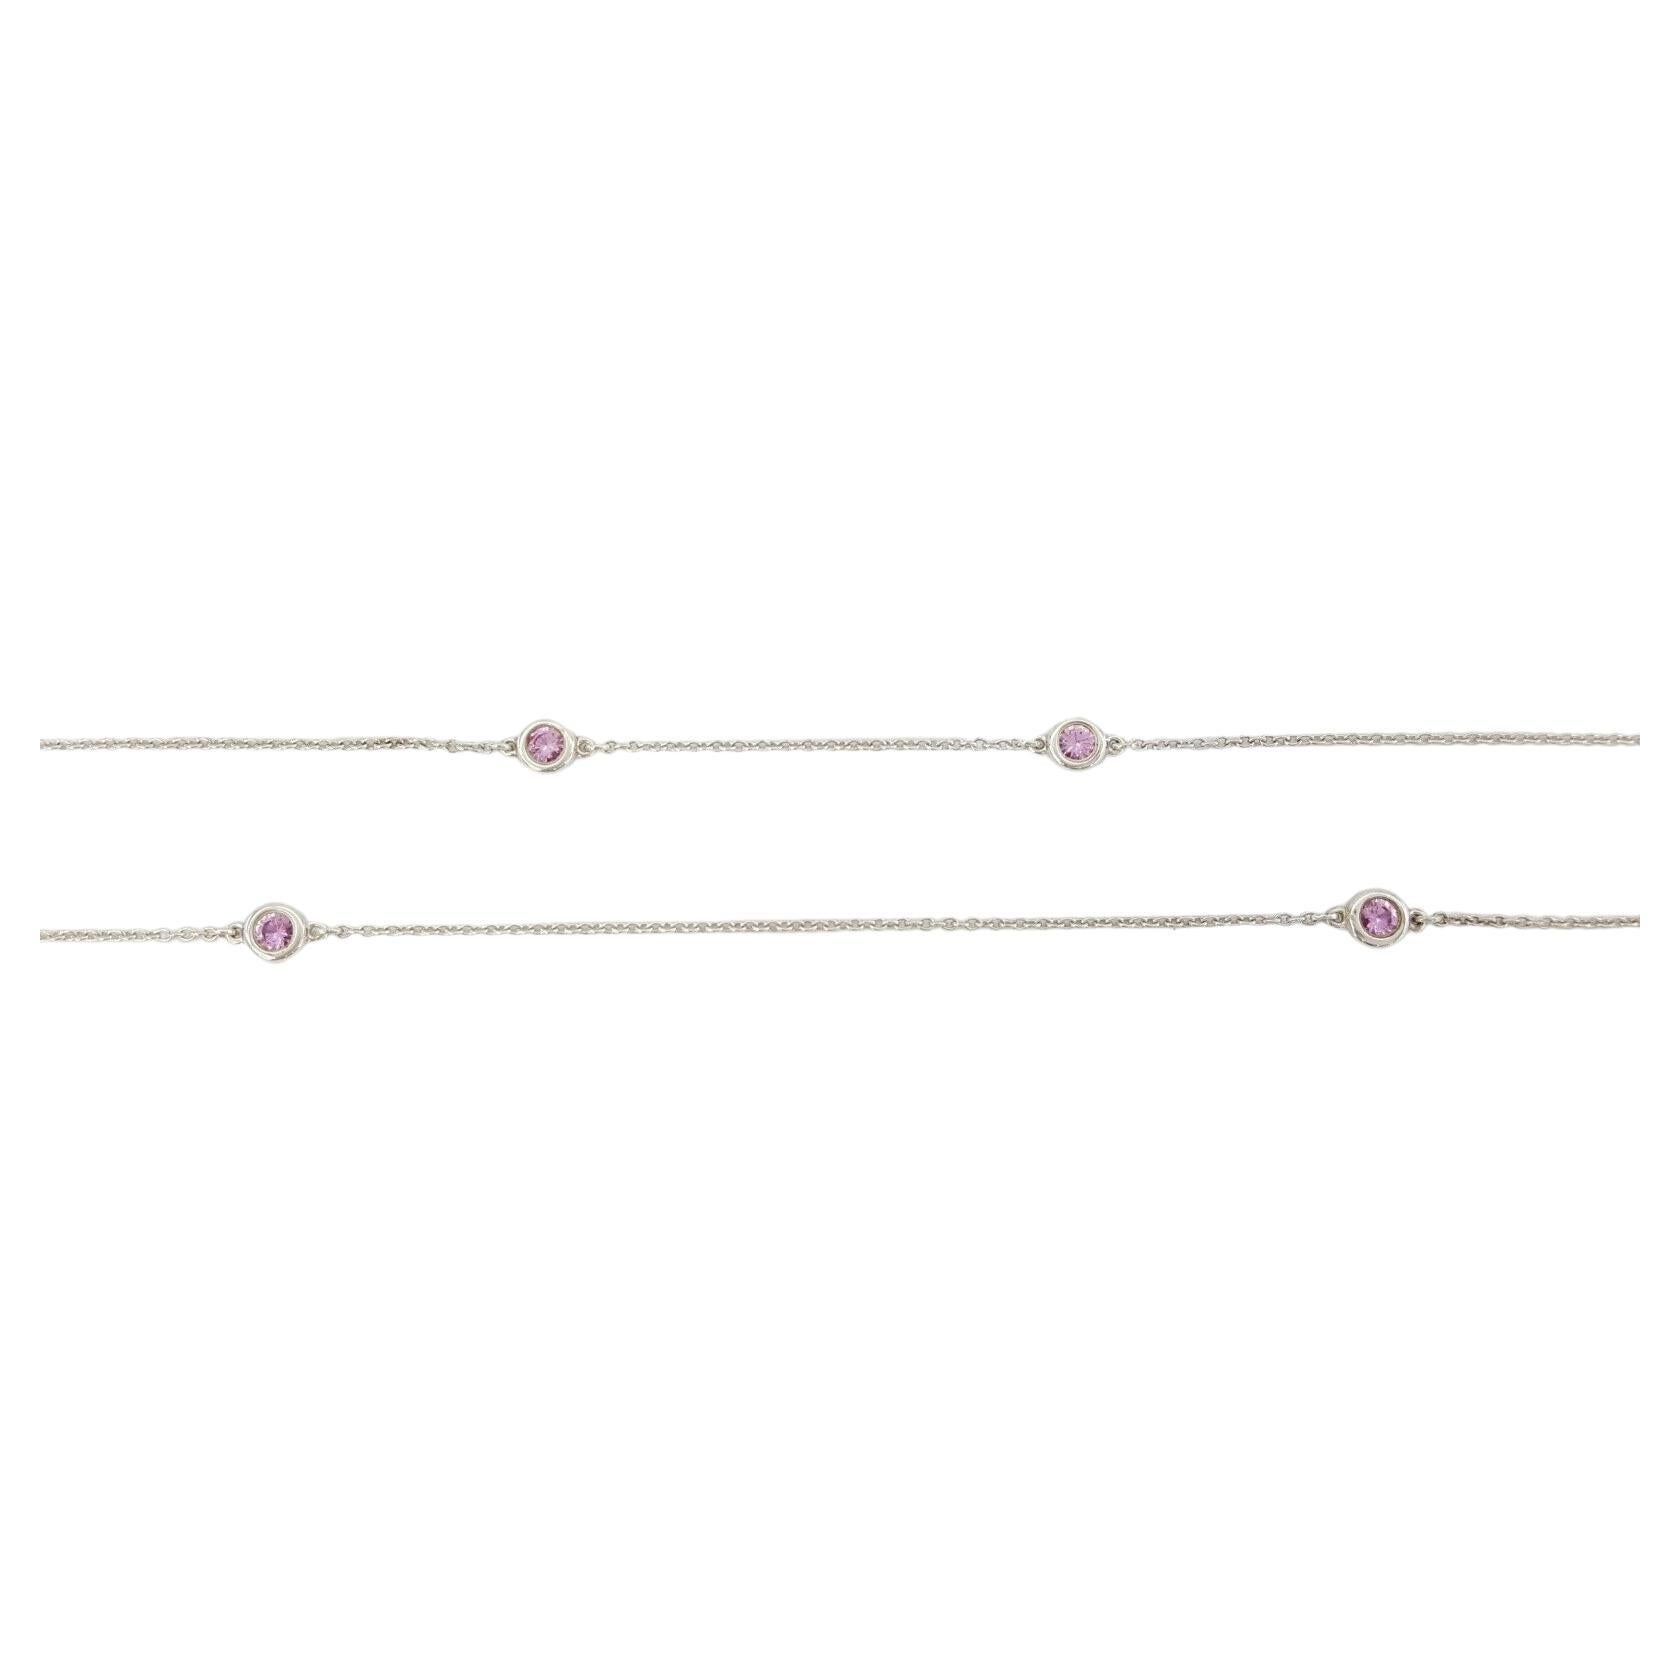 Dies ist eine 36-Zoll Tiffany & Co. Elsa Peretti® Color by the Yard® Sparkle-Halskette aus Sterlingsilber mit runden rosa Saphiren im Brillantschliff mit einem Gesamtgewicht von 1,3 Karat. Die Halskette wiegt 5,5 Gramm, wird mit einer